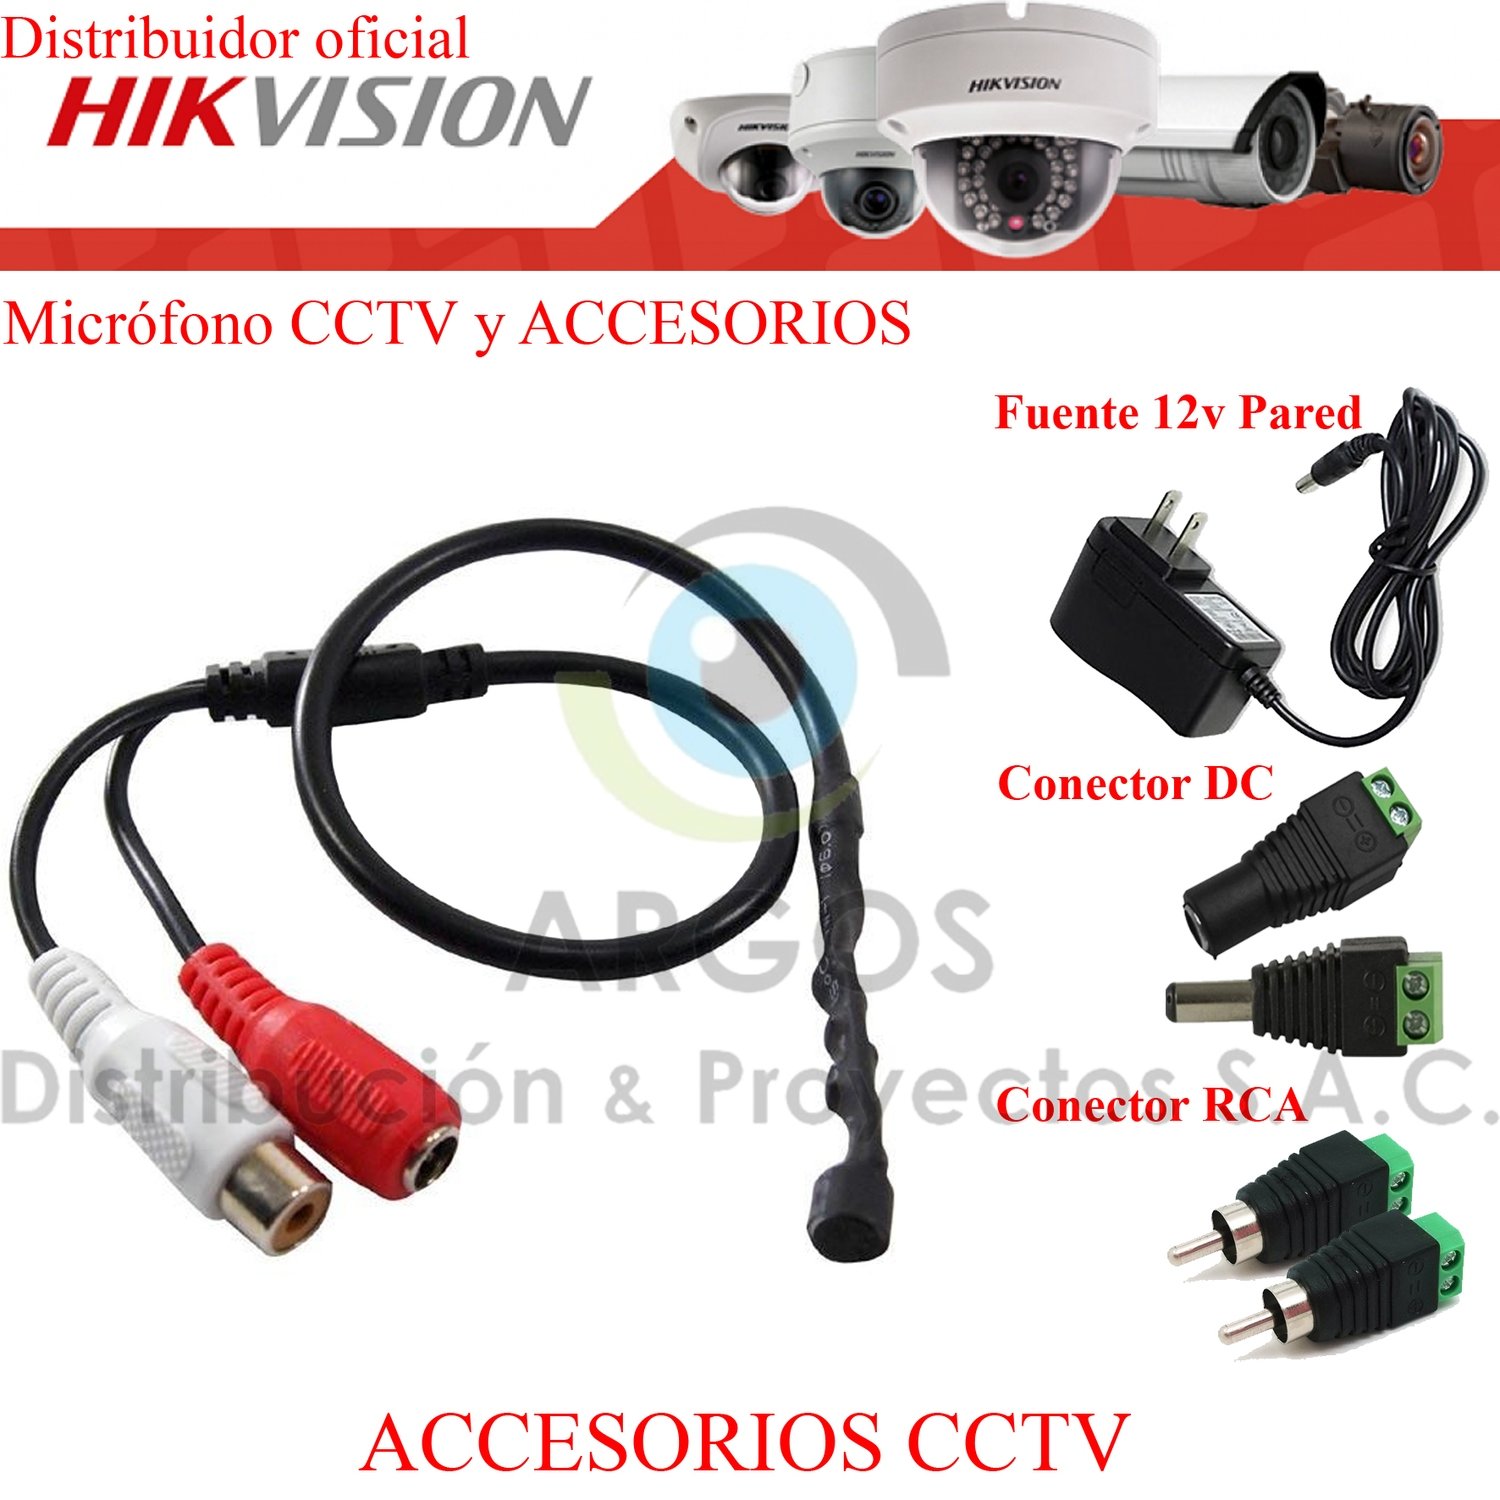 KIT COMPLETO MICROFONO CCTV Y ACCESORIOS